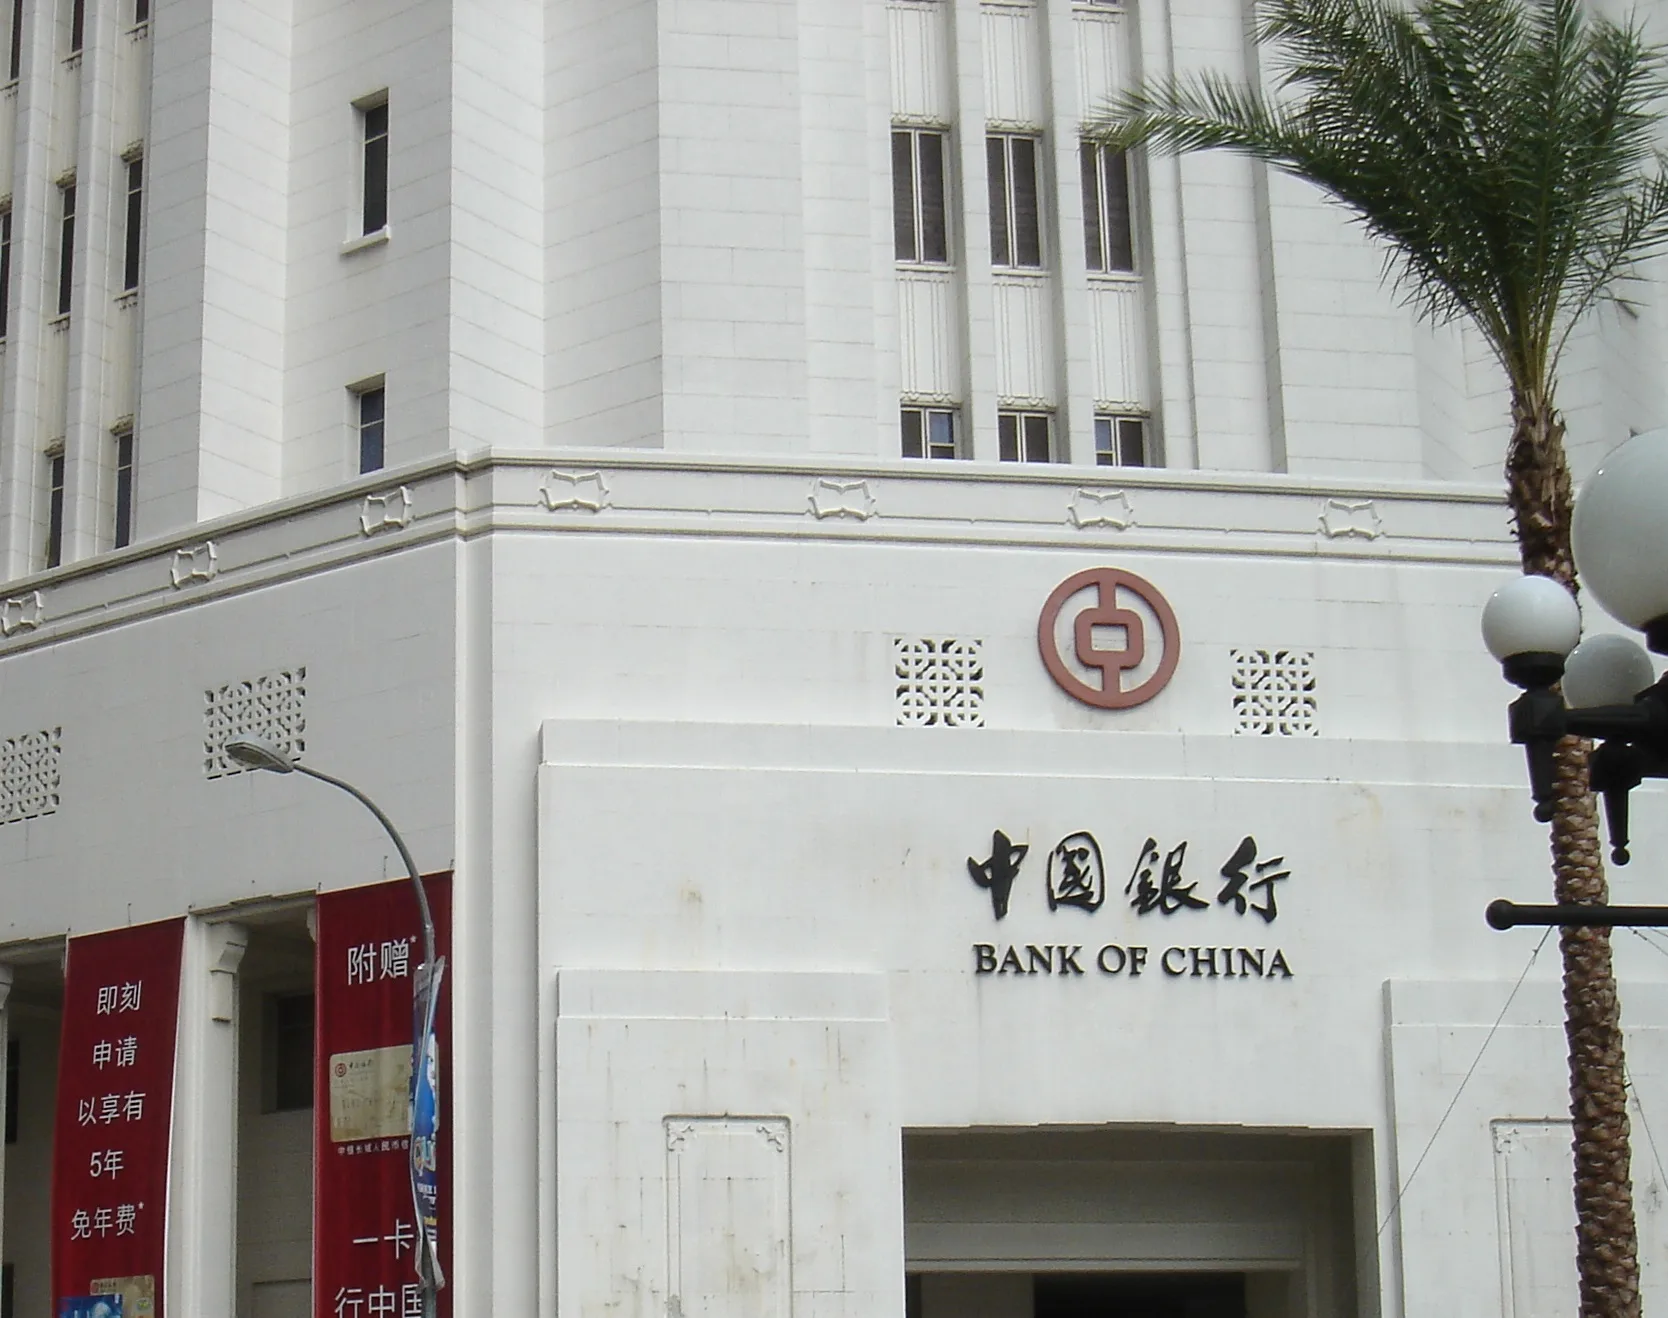 Bankofchina-sg